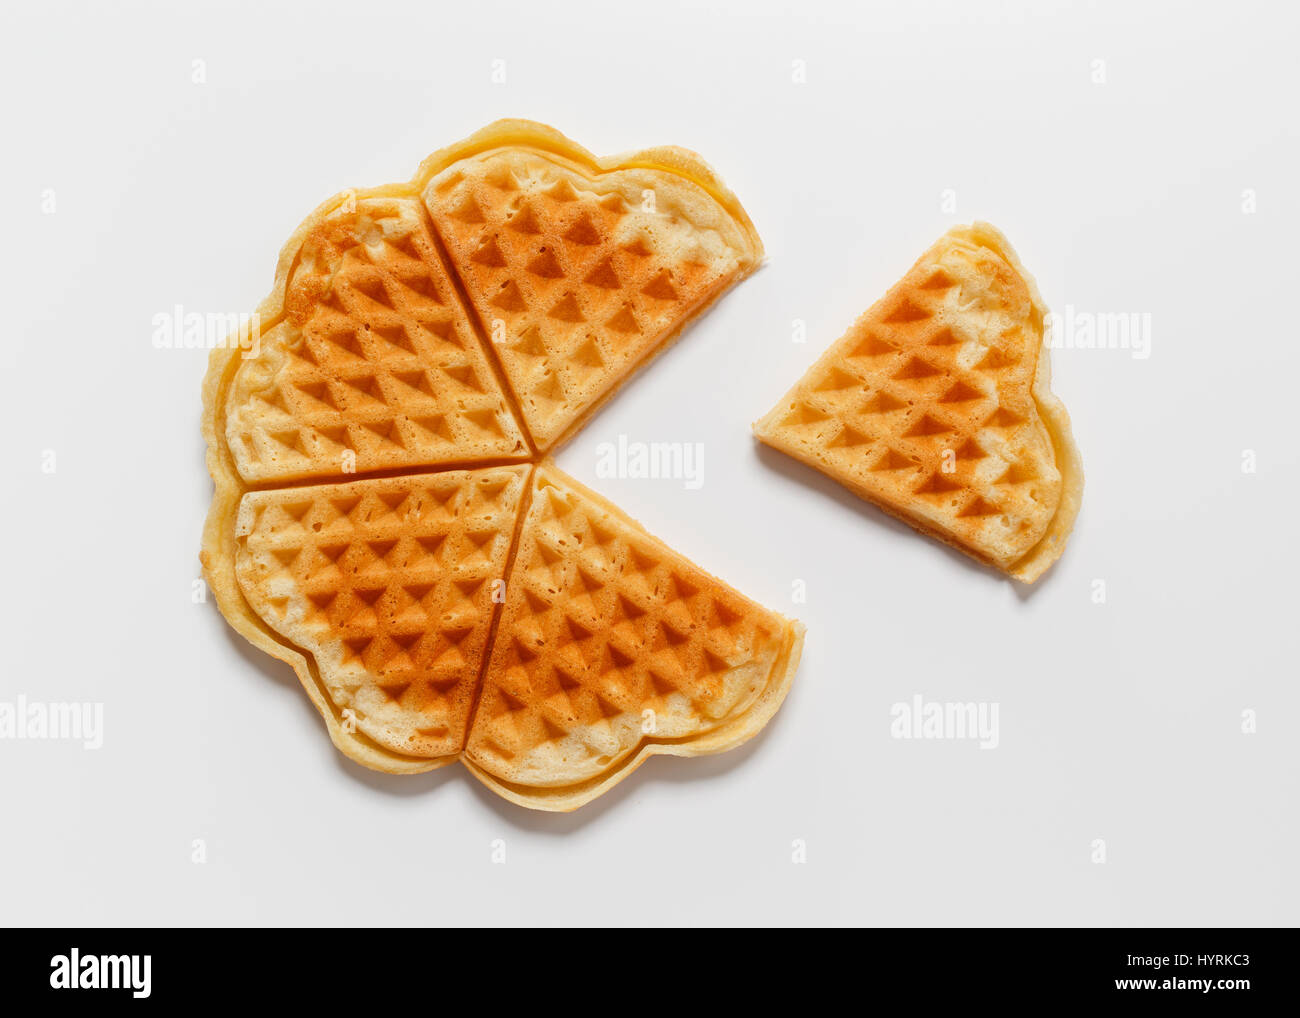 Belgian heart shaped waffle on white background Stock Photo